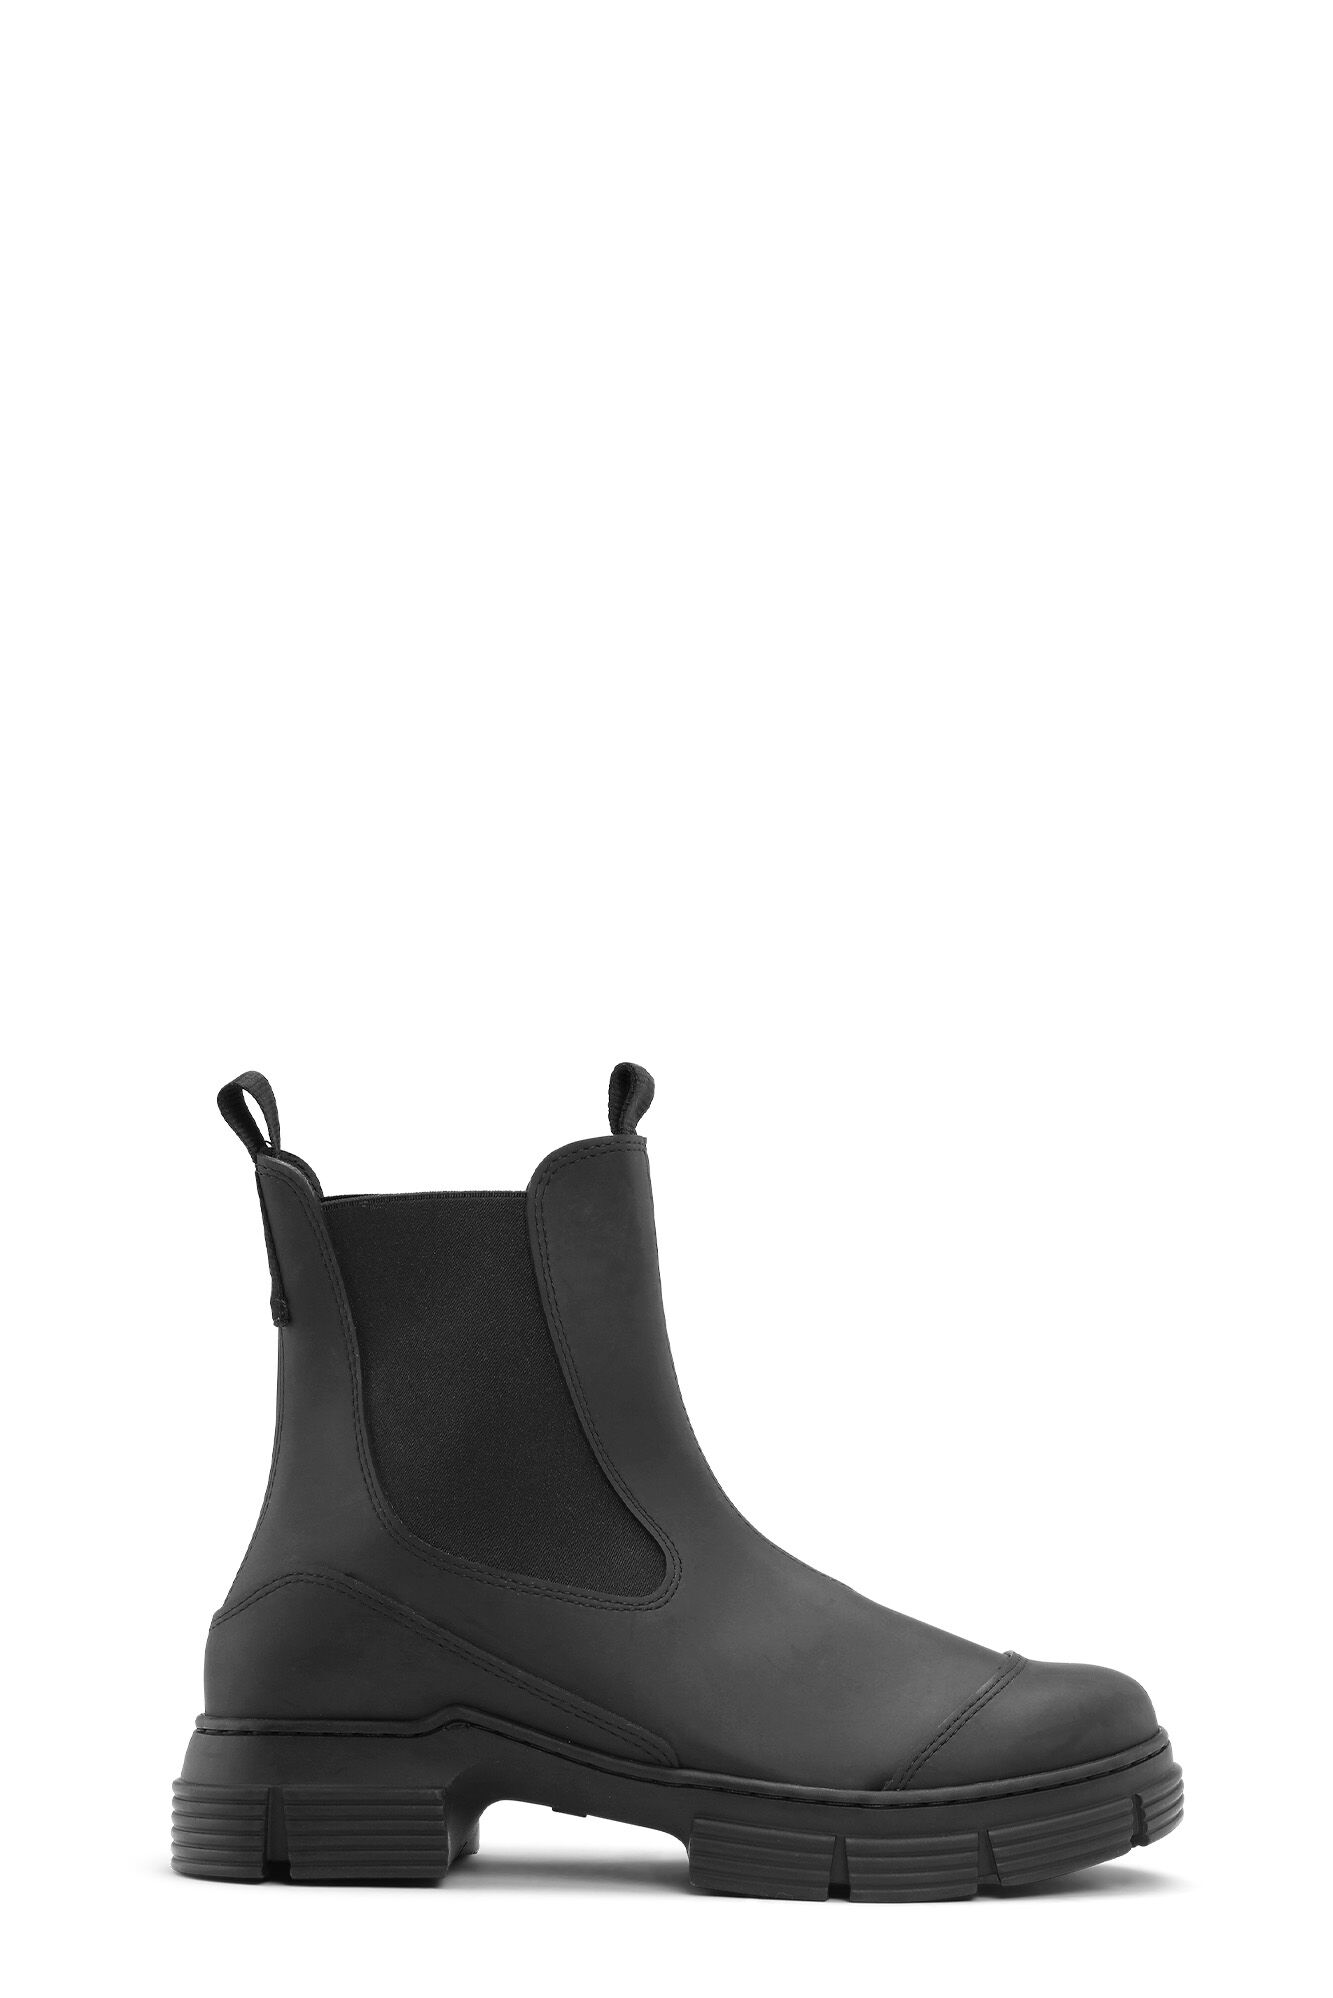 Ganni Synthetik 45mm Hohe Schnürschuhe Aus Nylon in Schwarz Damen Schuhe Flache Schuhe Schnürschuhe und Schnürstiefel 